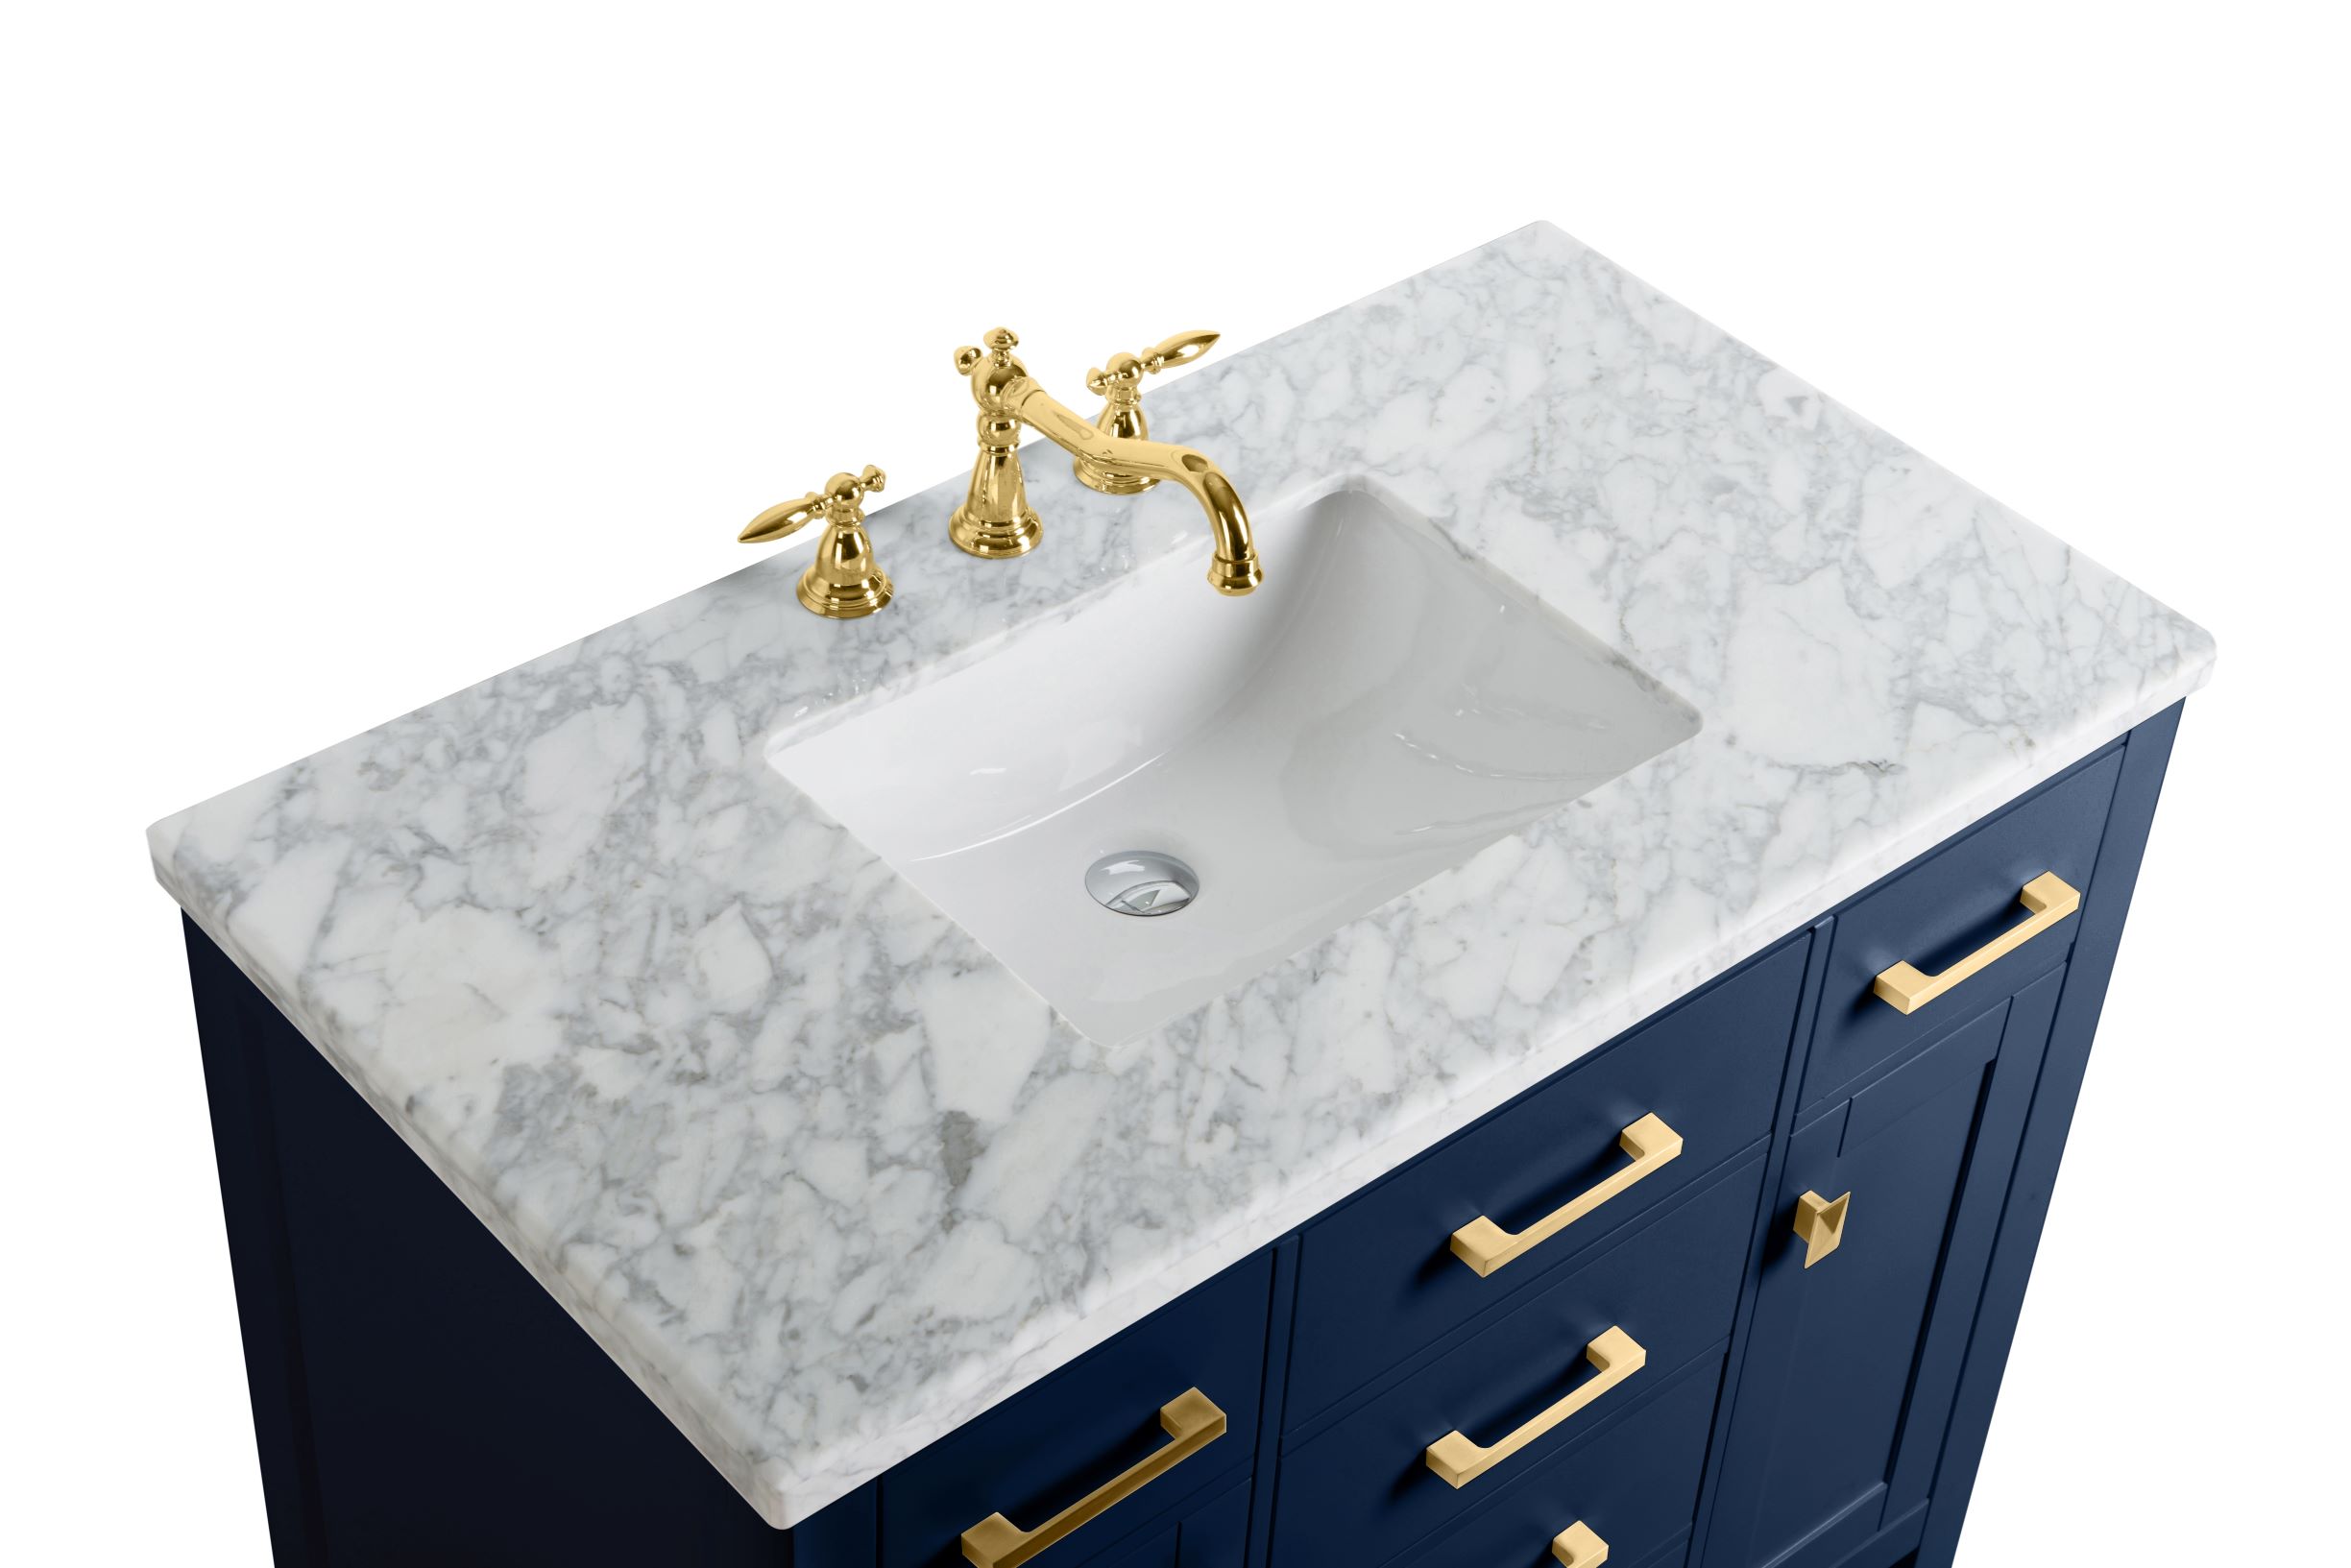 48 Marble Bathroom Vanity With Stainless Steel